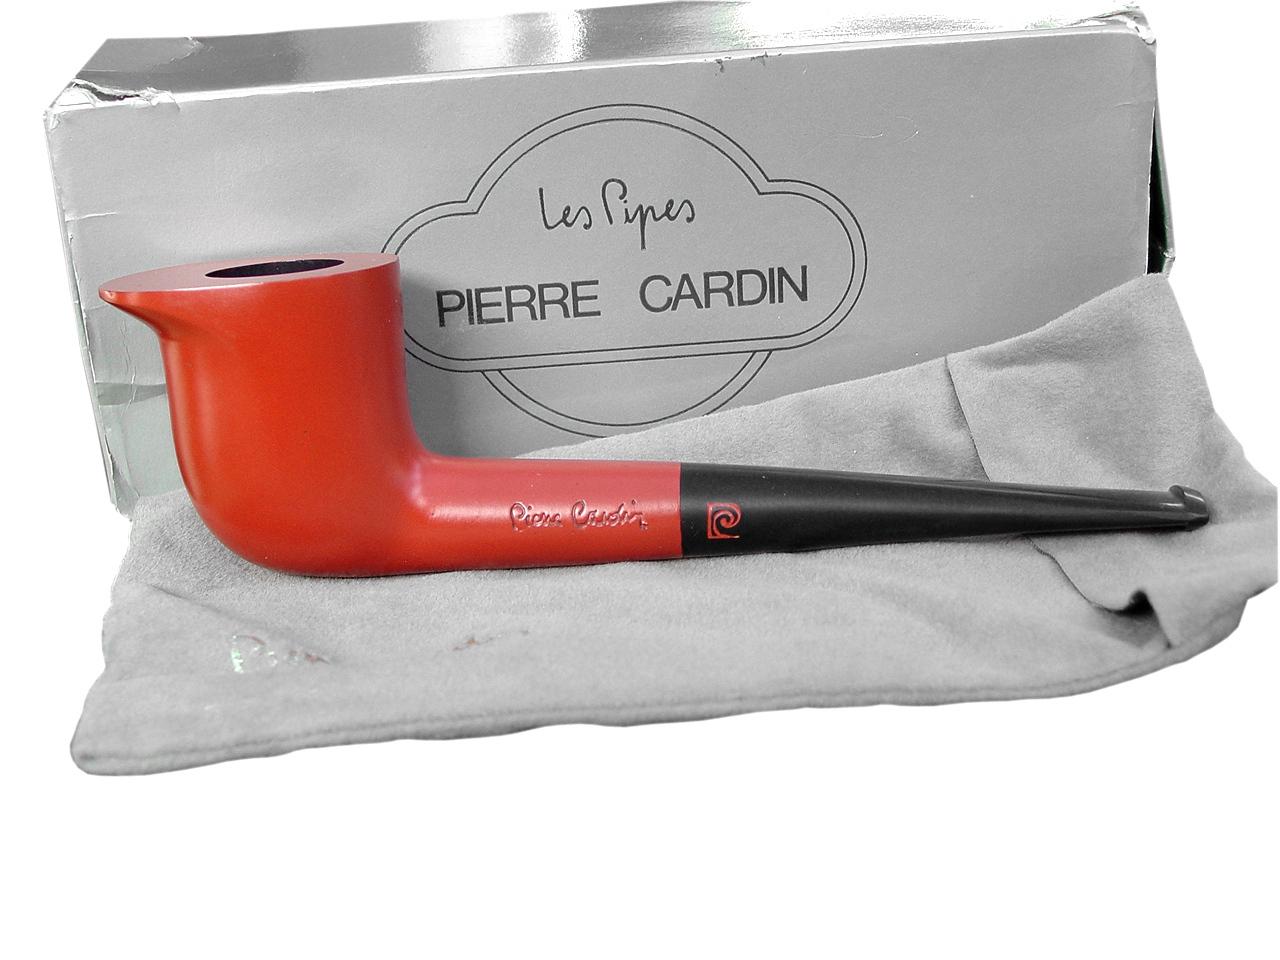 Pierre Cardin Les Pipes Design und perfekte Pfeife in Mahagoni und Harz Material

Verkauft wird eine 